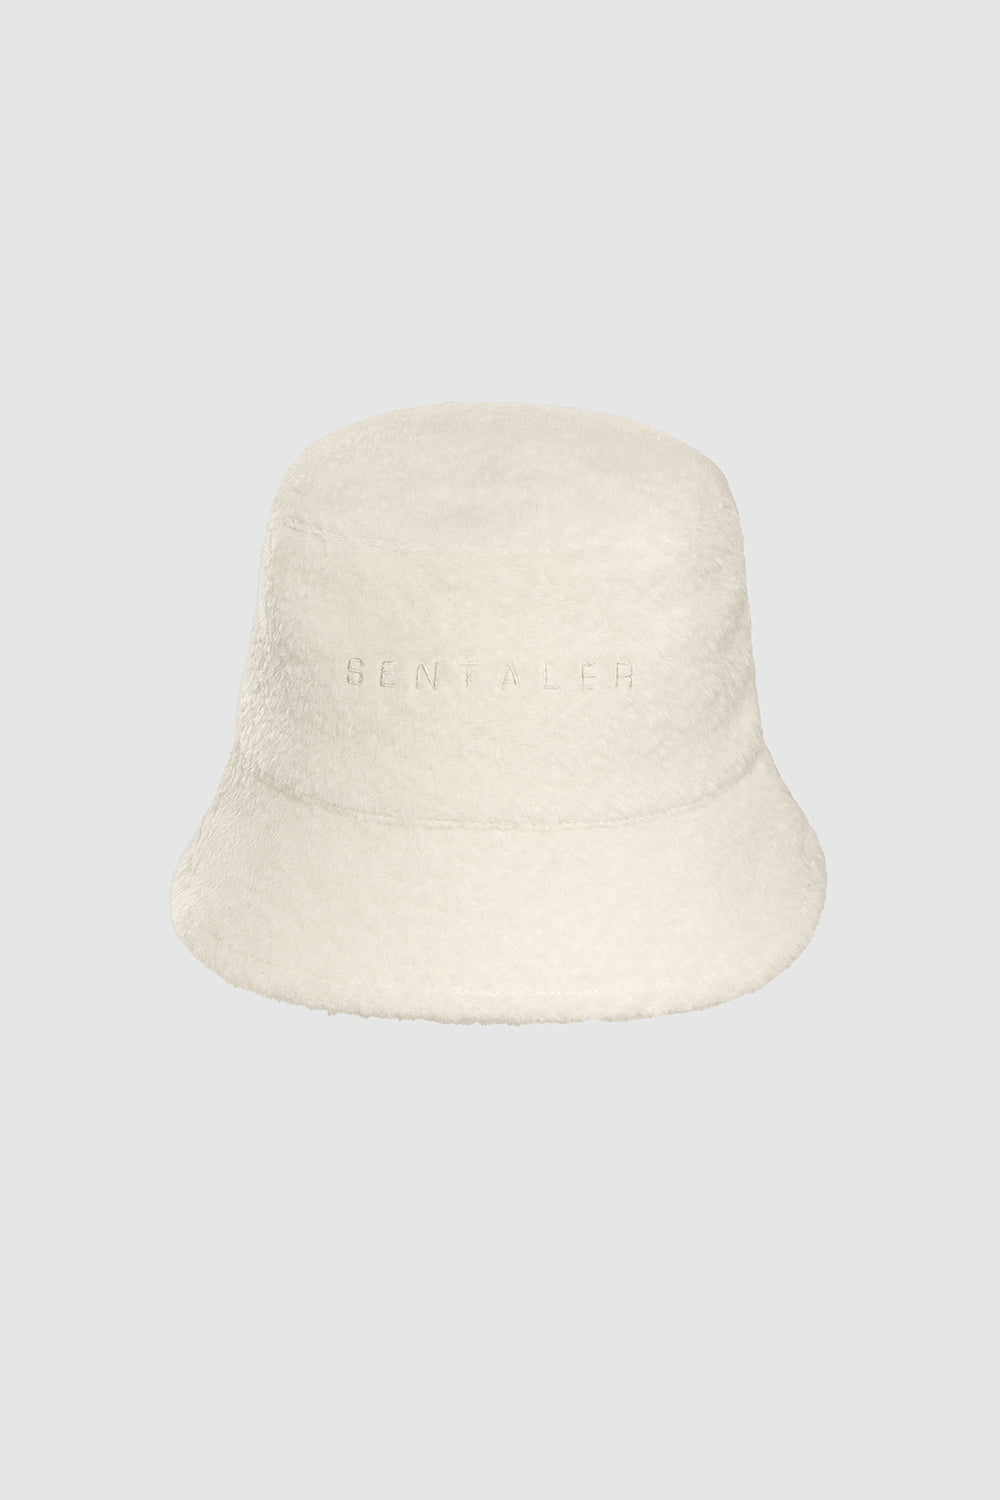 Bouclé Alpaca Bucket Hat in Ivory - Size M/L